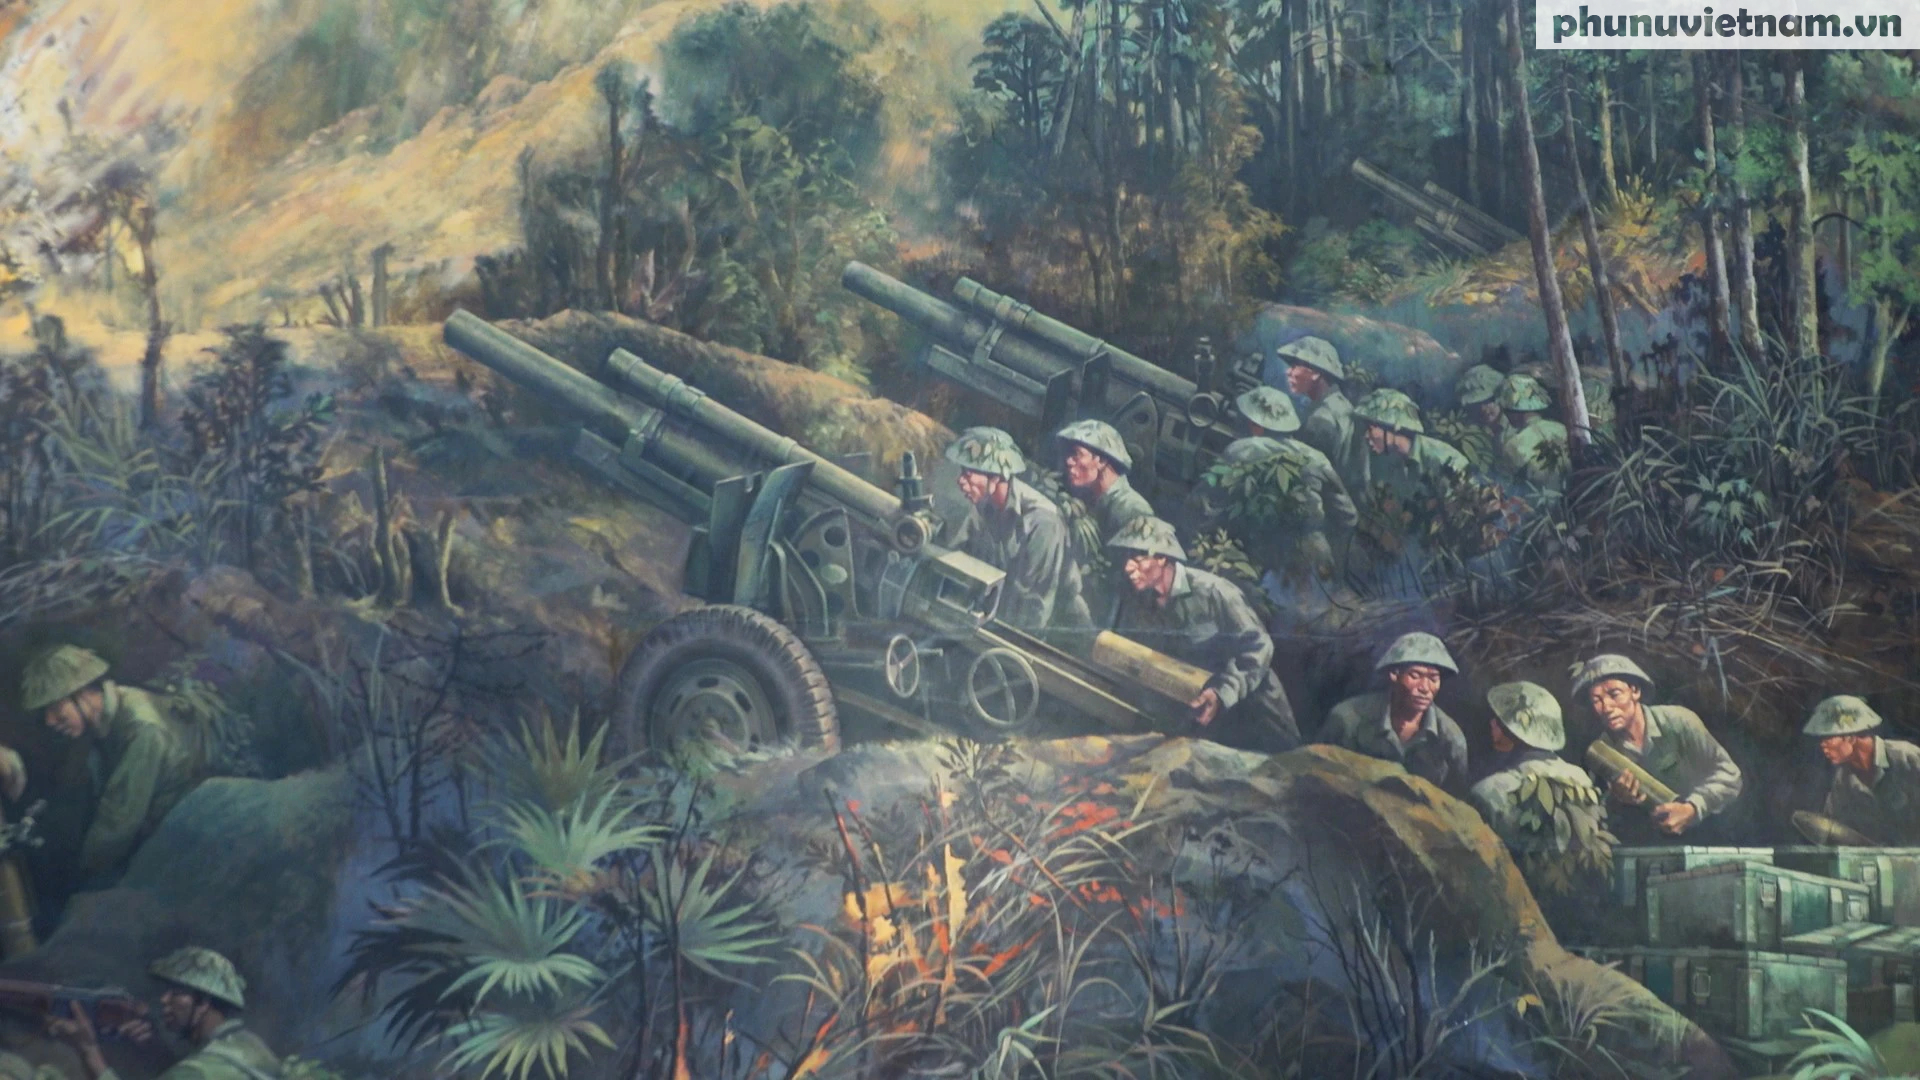 Tranh sơn dầu panorama hơn 3.000m2 về chiến dịch Điện Biên Phủ - Ảnh 4.